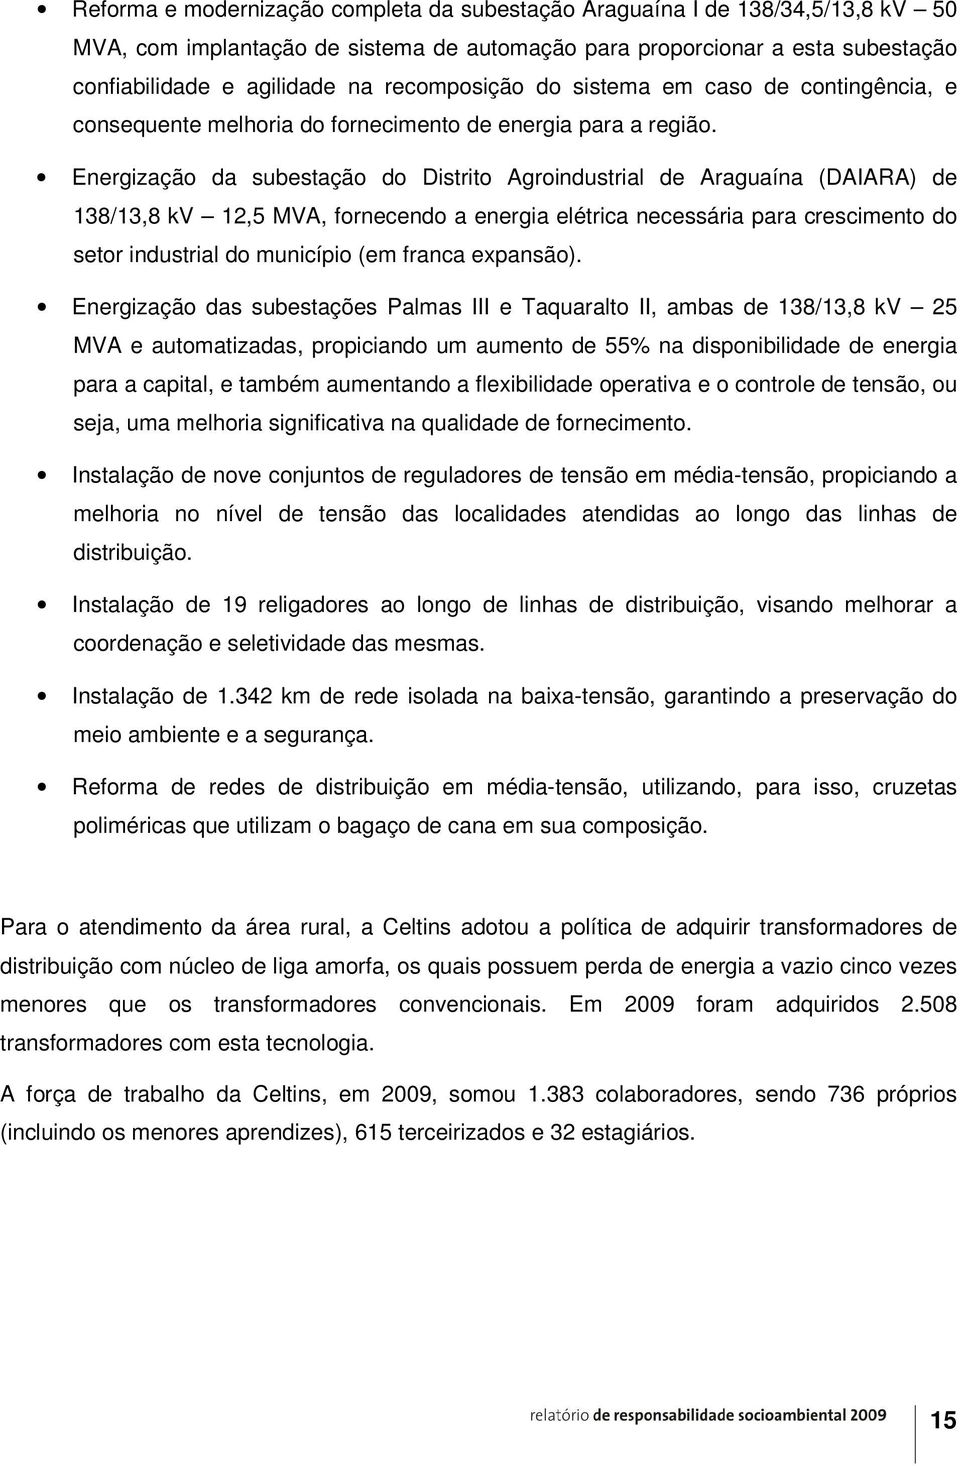 Energização da subestação do Distrito Agroindustrial de Araguaína (DAIARA) de 138/13,8 kv 12,5 MVA, fornecendo a energia elétrica necessária para crescimento do setor industrial do município (em